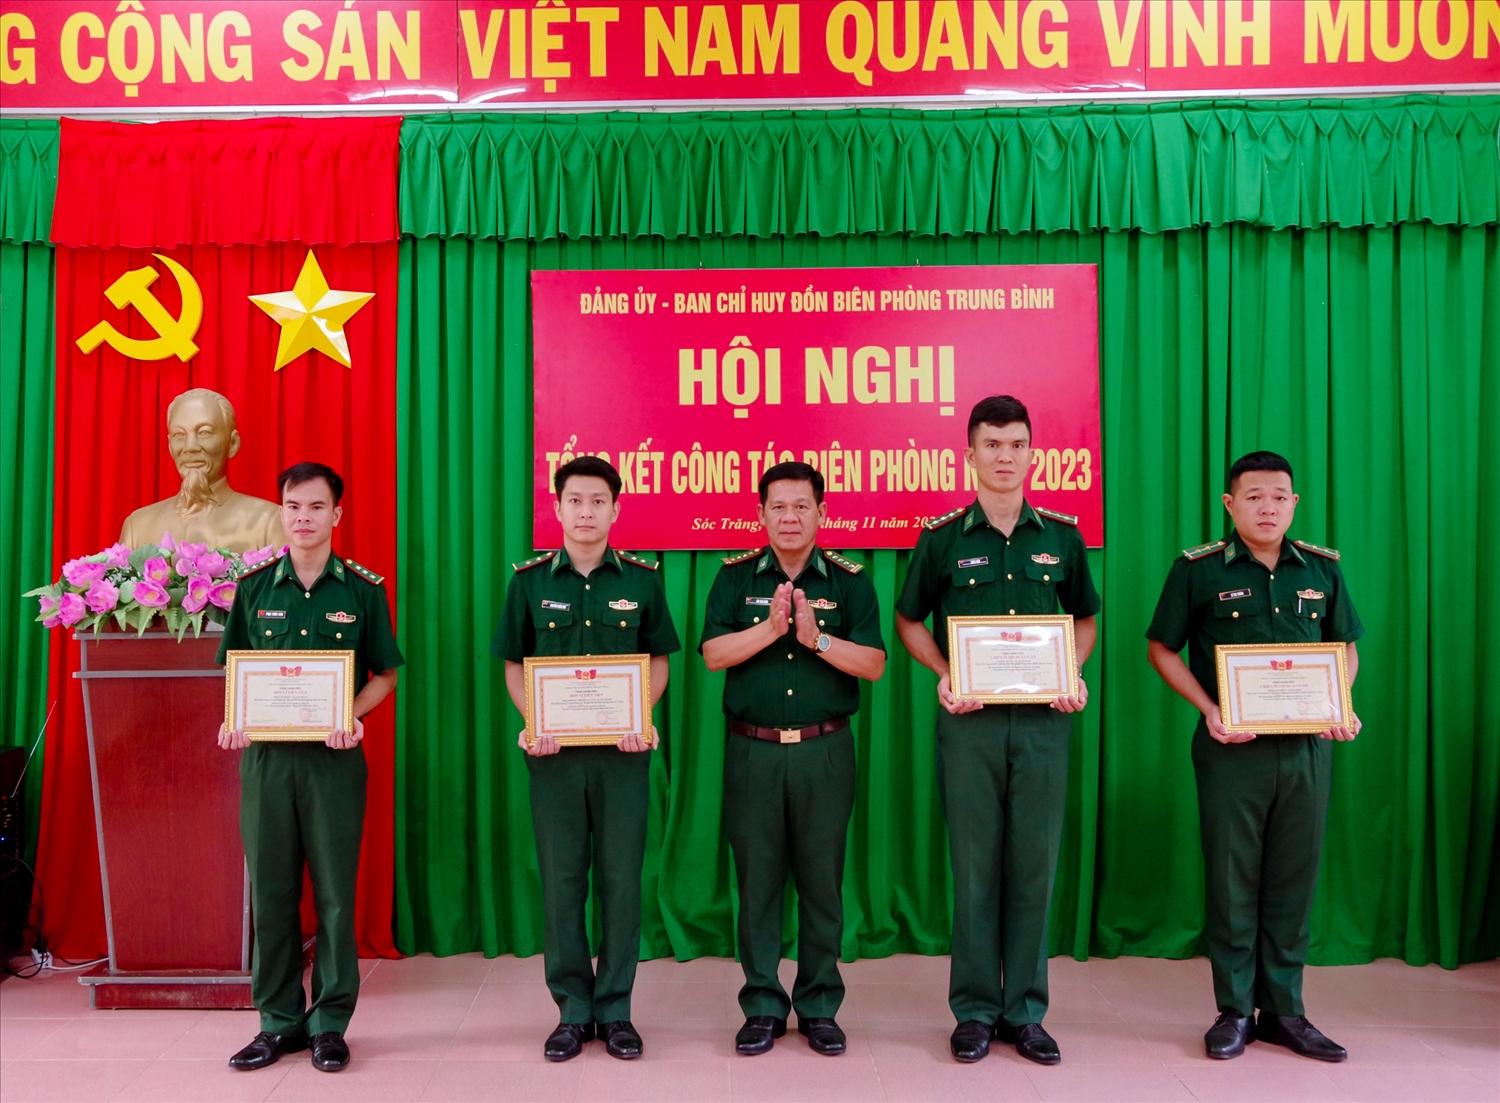 Đại tá Bùi Văn Bình, Phó Chỉ huy trưởng BĐBP tỉnh Sóc Trăng trao khen thưởng cho các tập thể, cá nhân đồn Biên phòng Trung Bình, có thành tích tích xuất sắc trong phong trào thi đua quyết thắng năm 2023